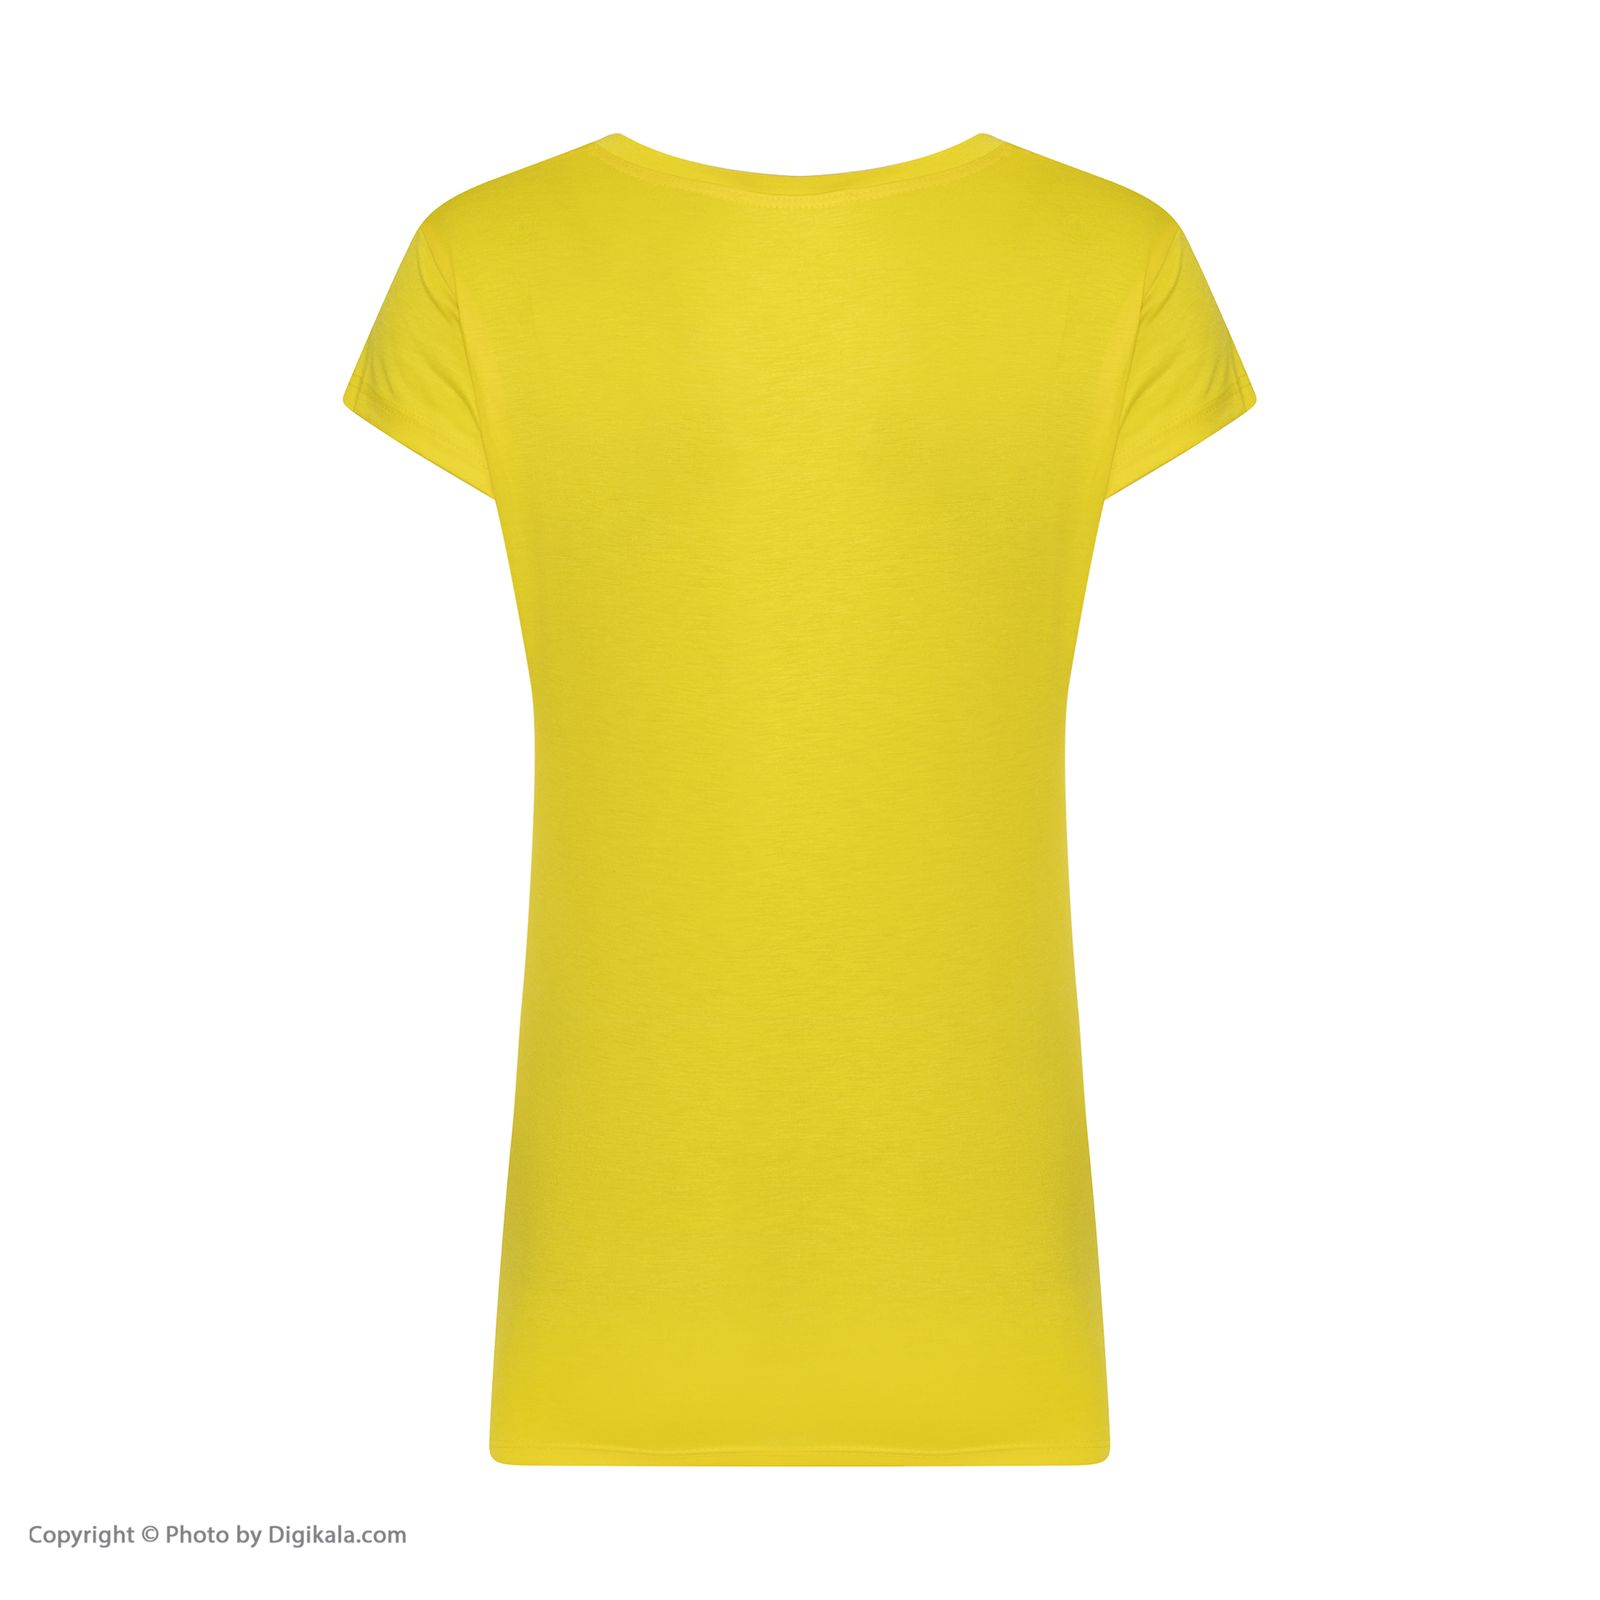 ست تی شرت و شلوارک زنانه افراتین مدل Dream کد 6558 رنگ زرد -  - 4